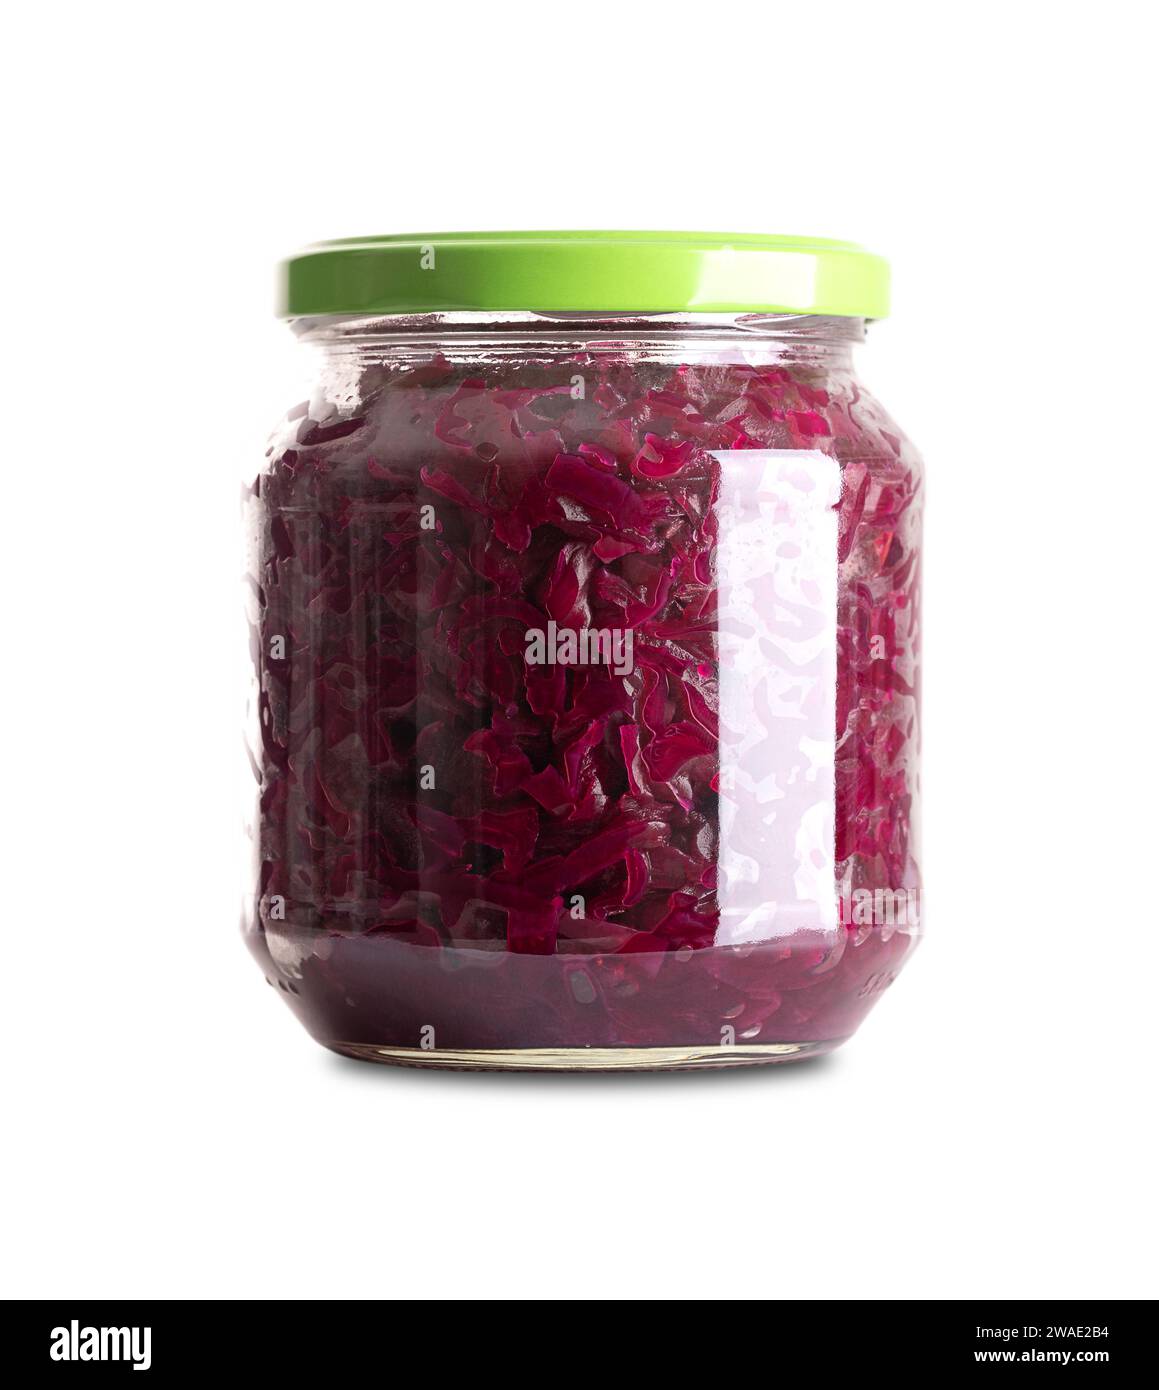 Cavolo rosso, Blaukraut tedesco fermentato in casa in vaso di vetro con coperchio. Cavolo rosso crudo, fermentato da batteri lattici. Foto Stock